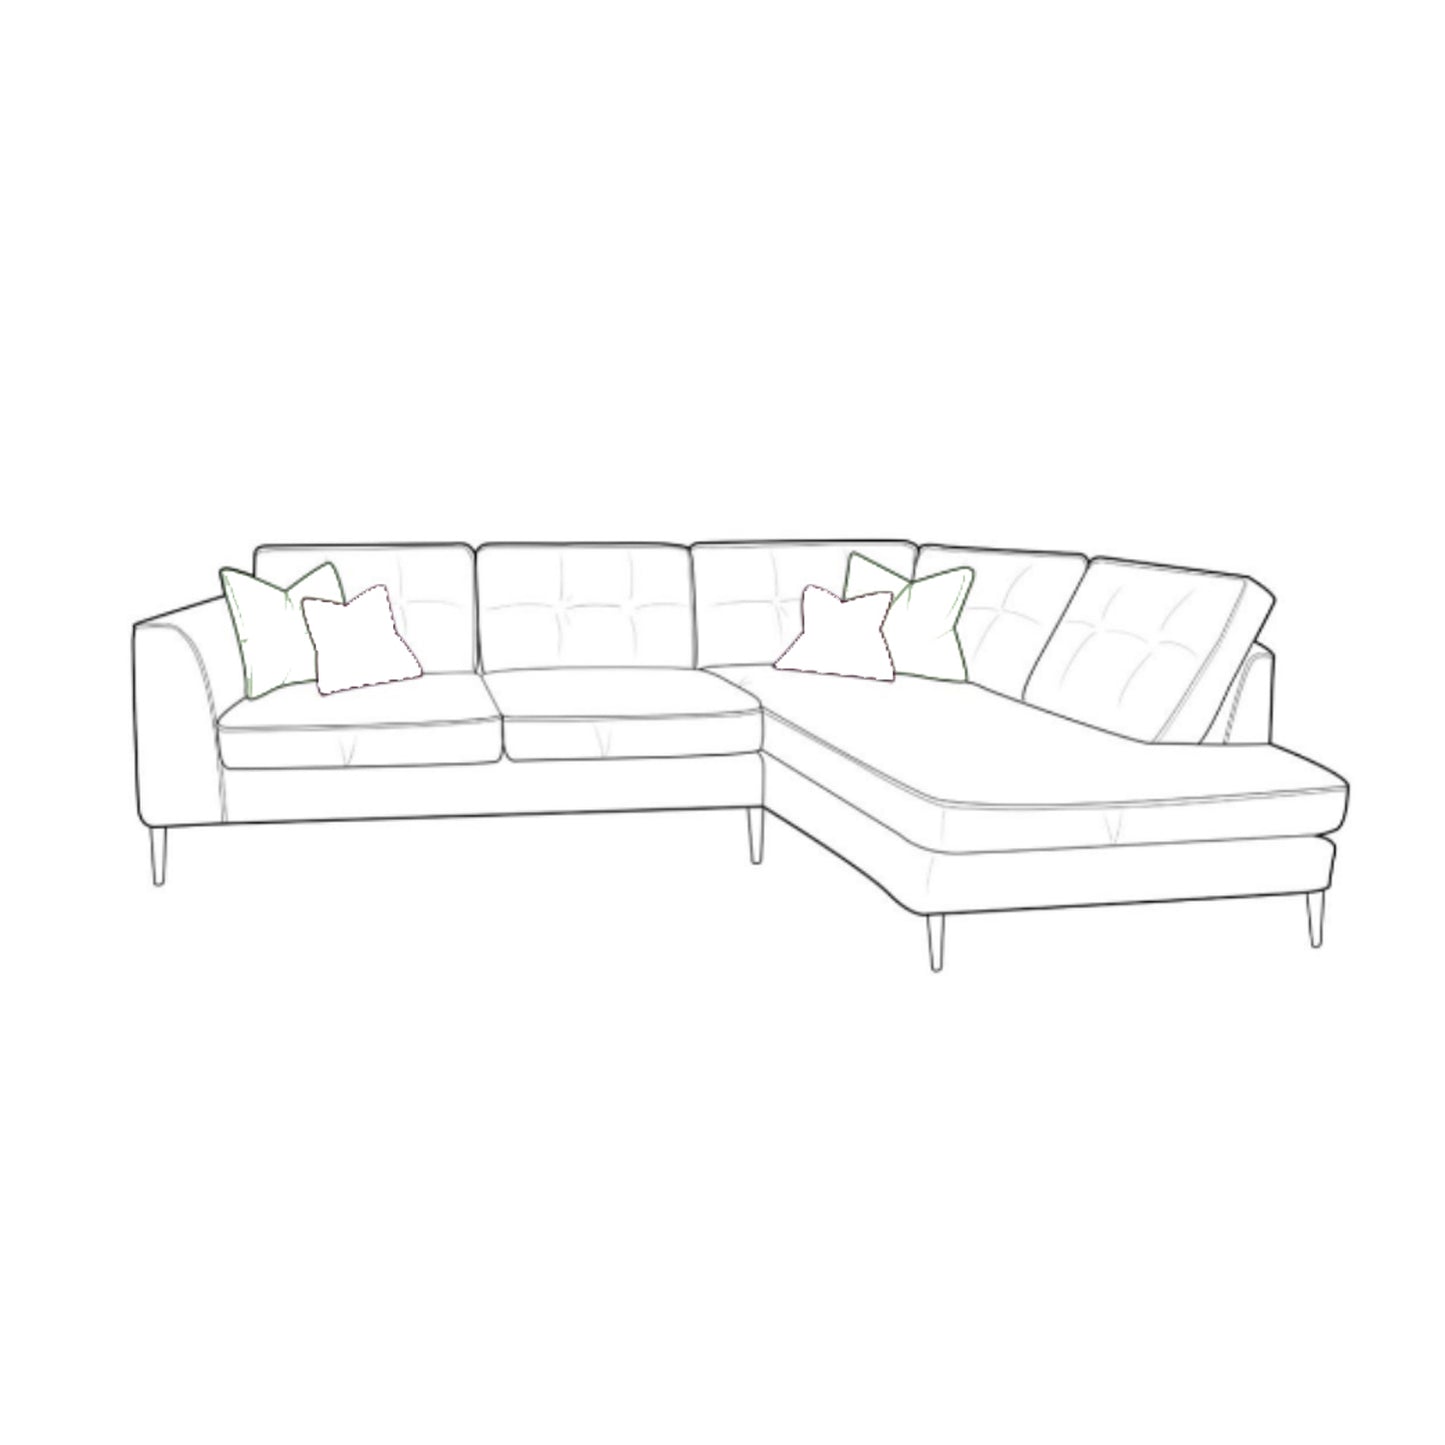 Finley Sofa - Small Corner